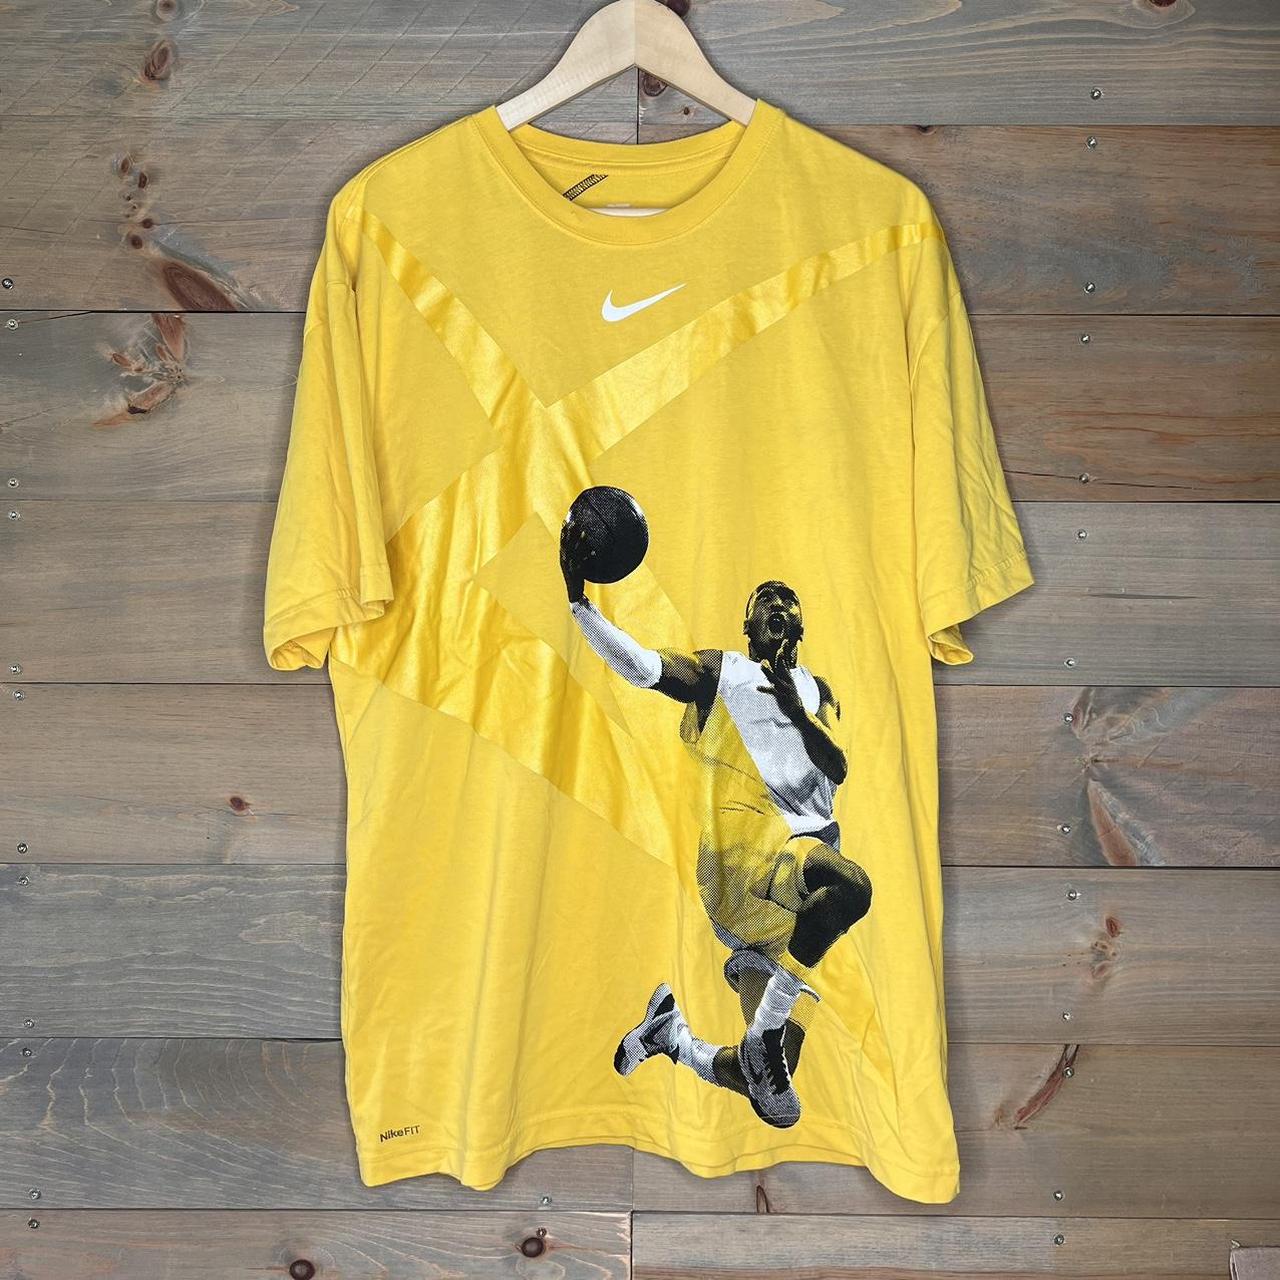 Nike, Shirts, B35 Nike Kobe Bryant Black Mamba Shirt Sz L